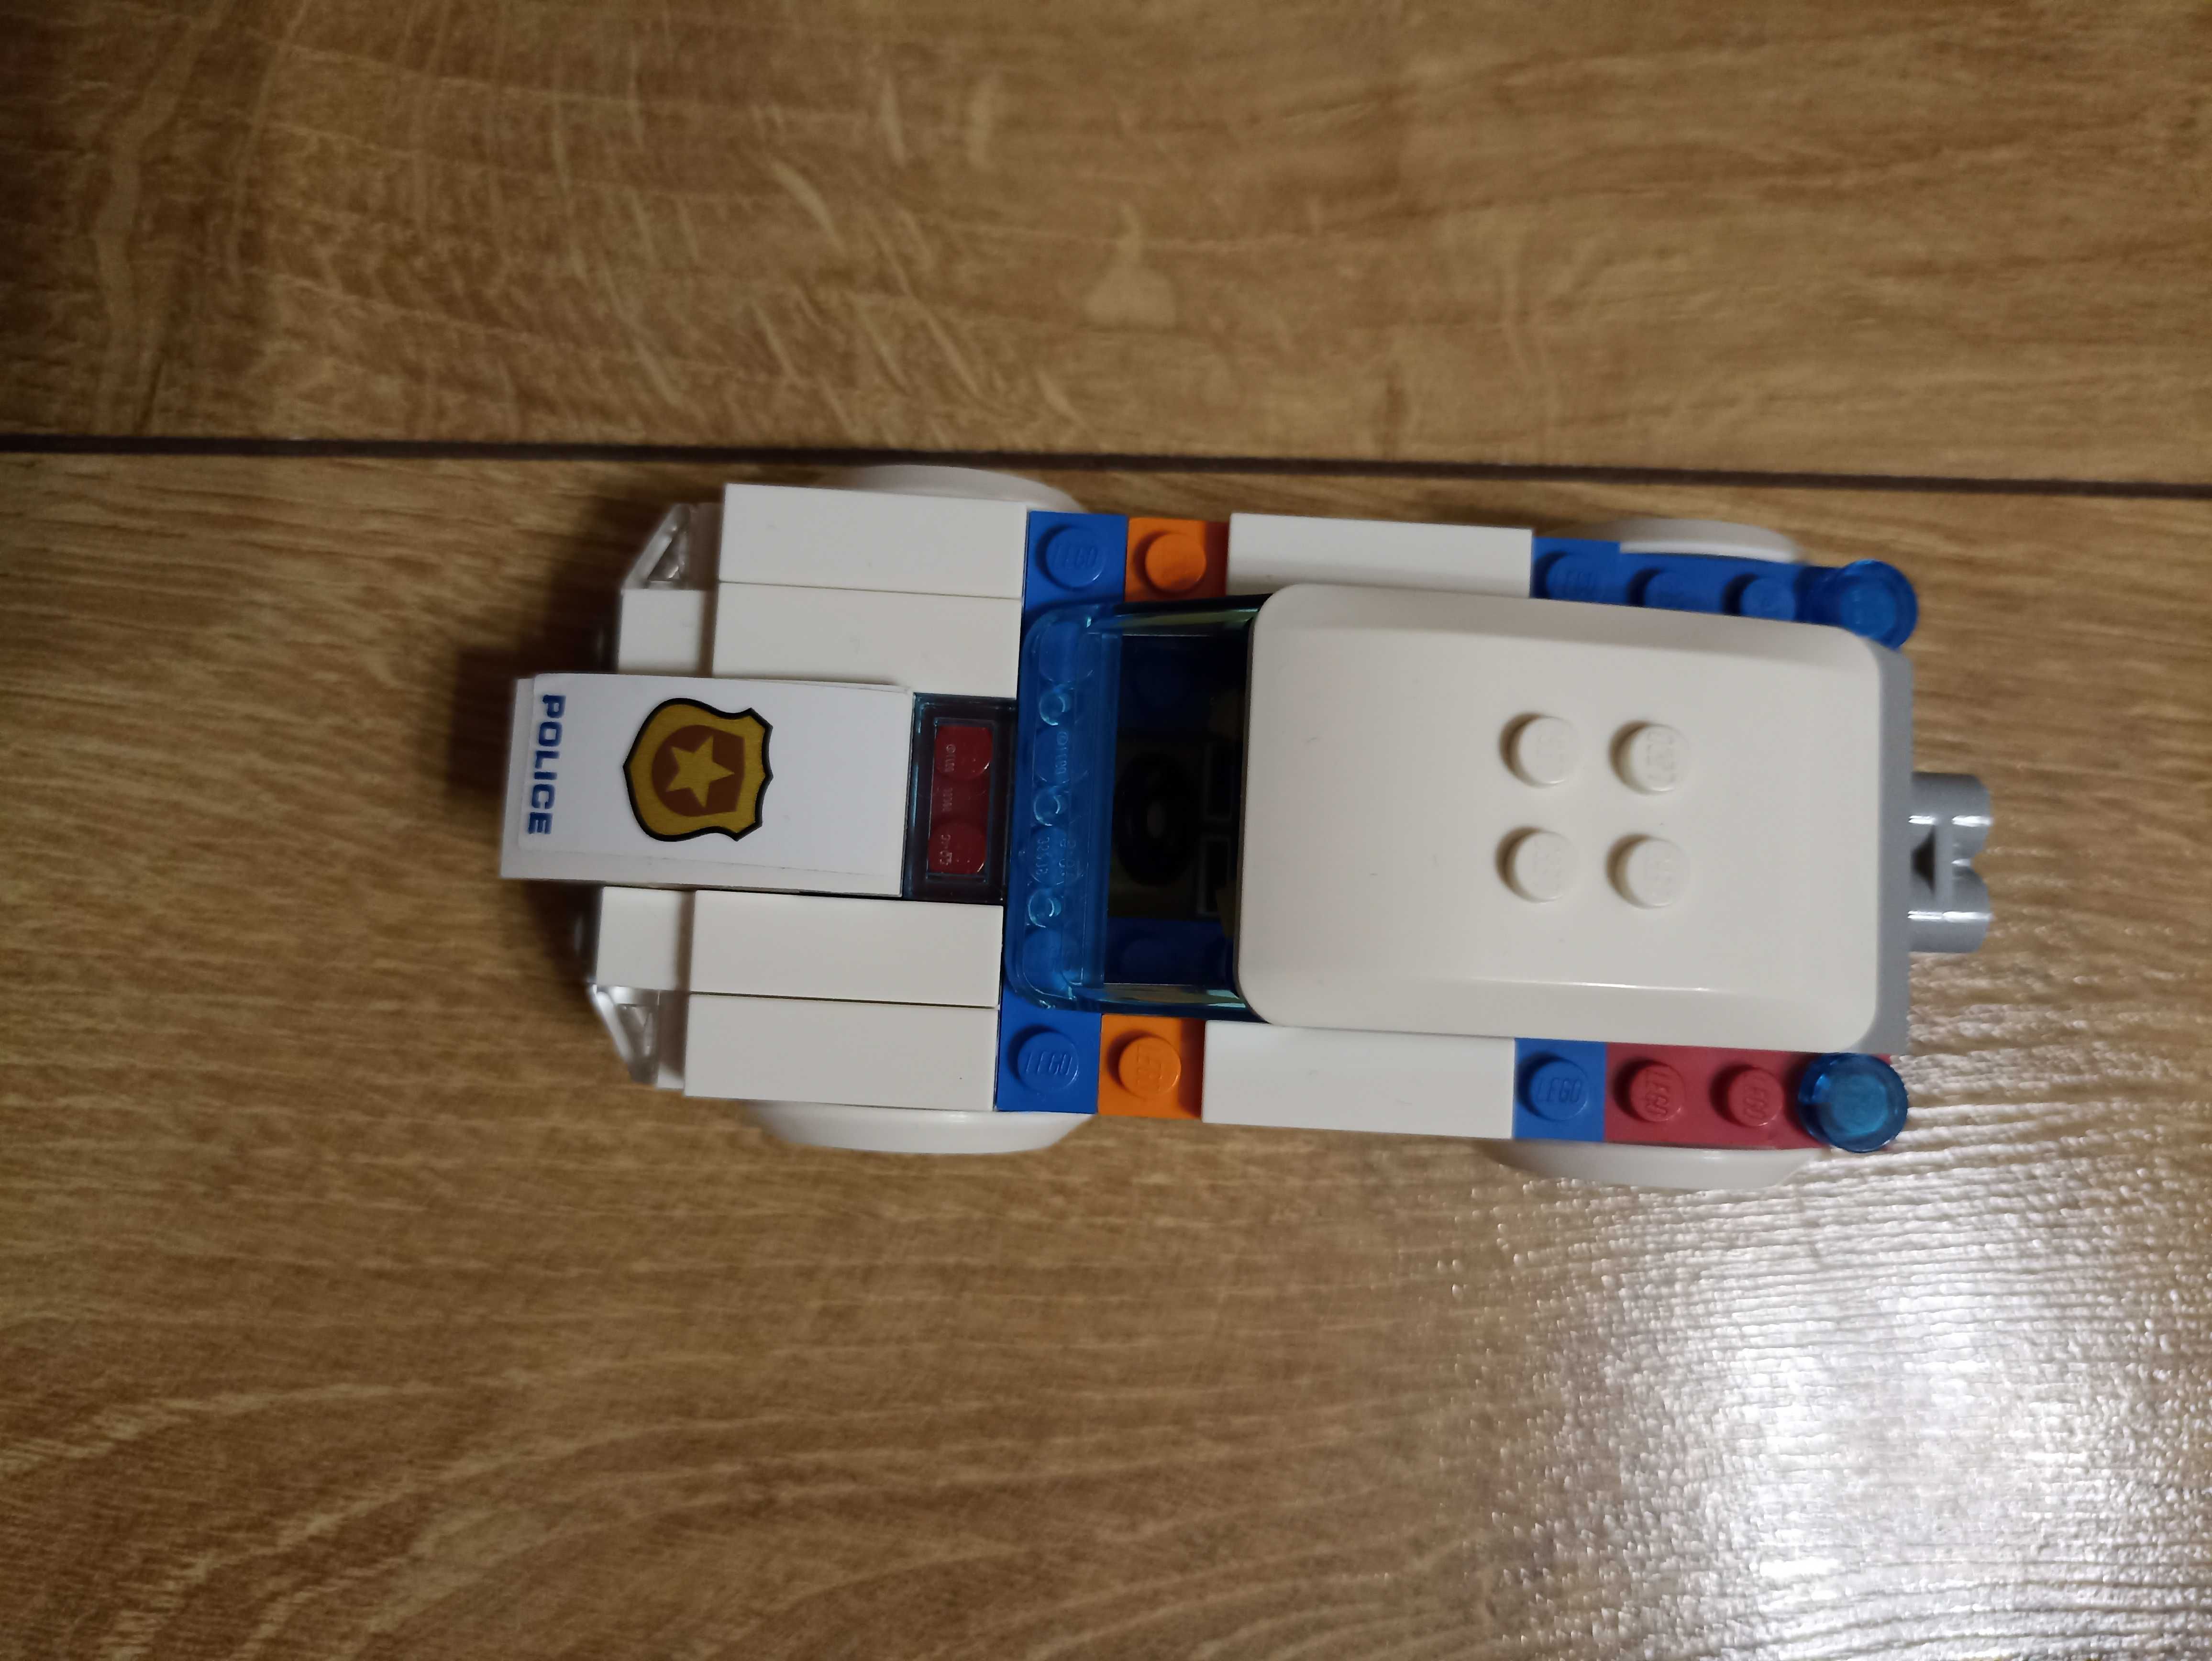 Конструктор LEGO,оригинал,машина полицейская